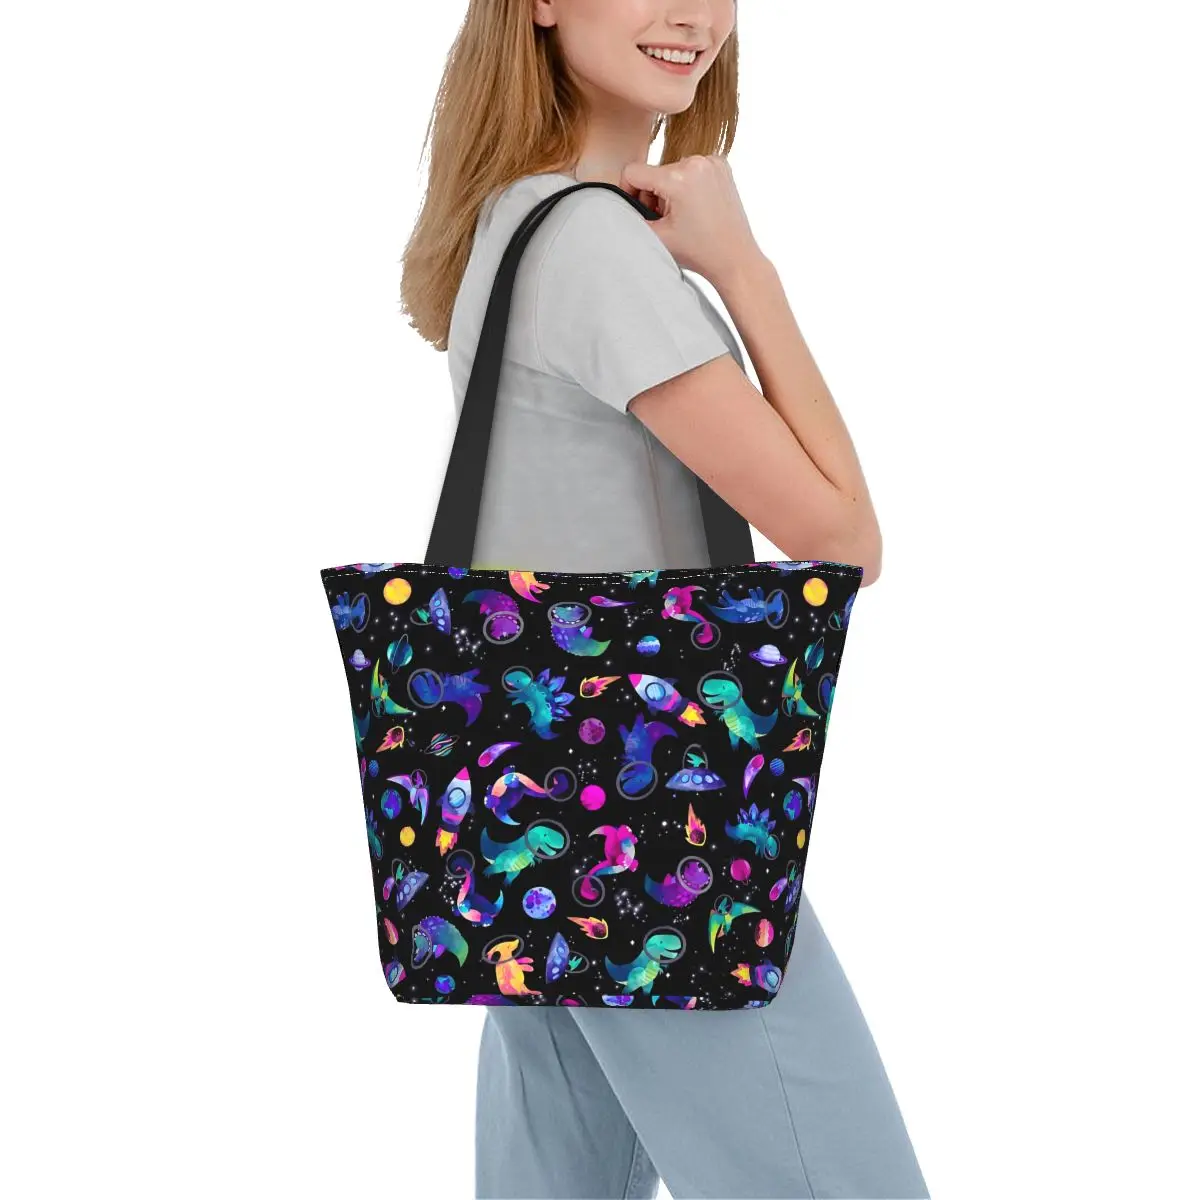 

Сумка-шоппер с изображением космоса динозавра, акварельные сумки с изображением животных для отдыха, сумка-тоут из полиэстера для колледжа, женская дизайнерская сумка через плечо